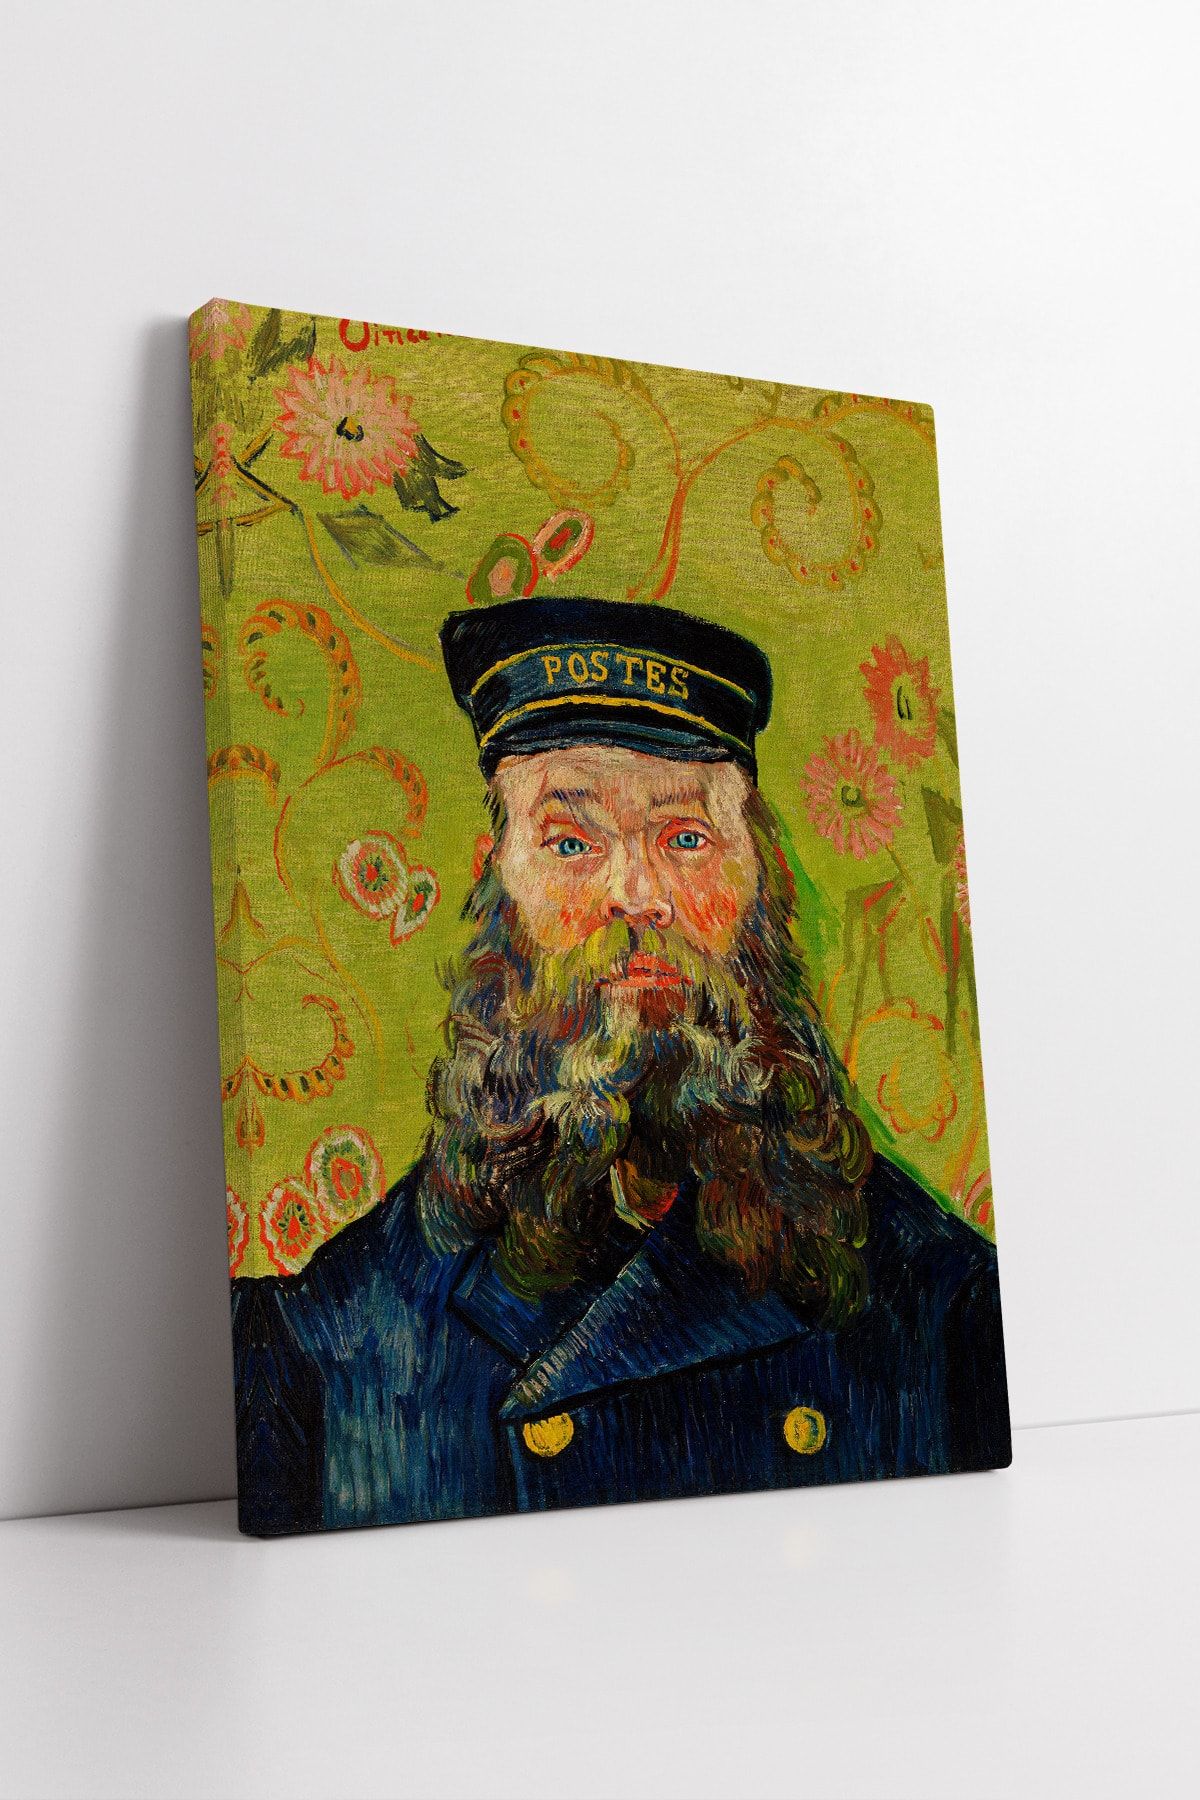 Blok Design Kanvas Tablo Resim Van Gogh Joseph Roulin Portresi Yağlıboya Duvar Tablosu